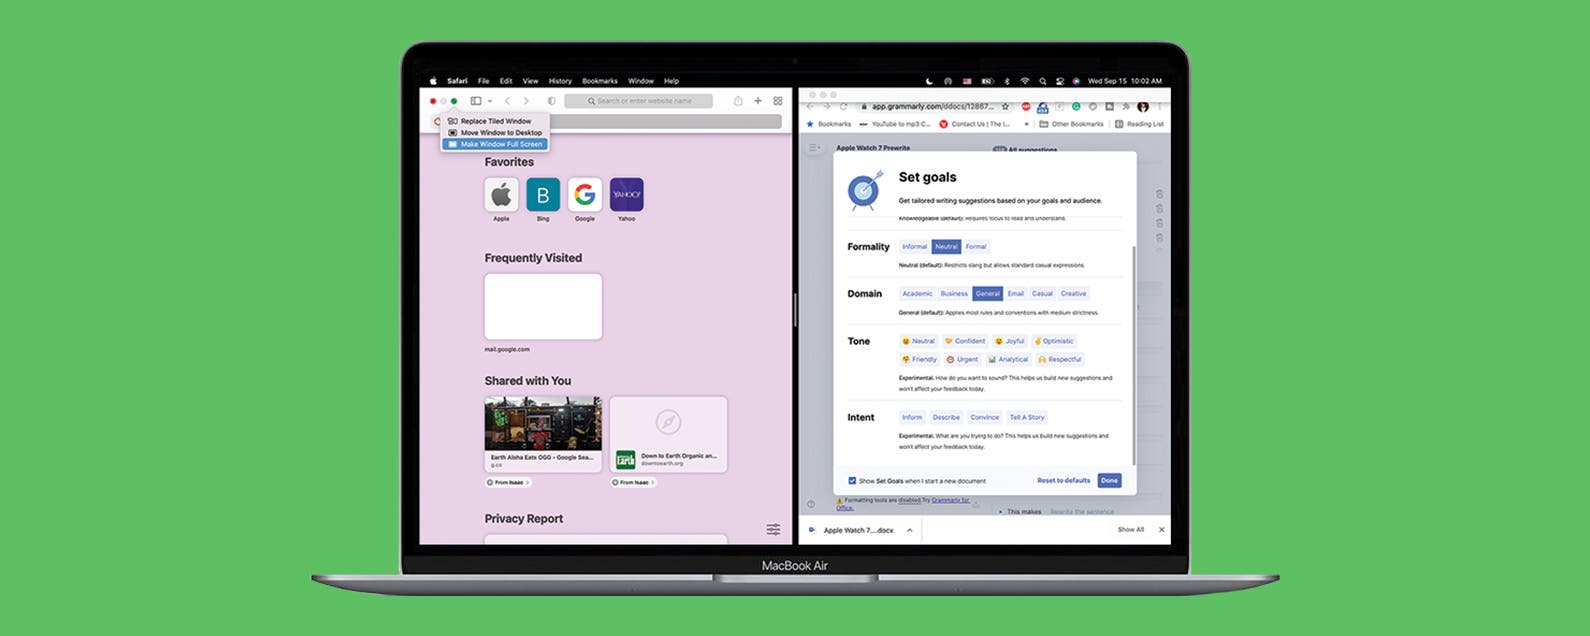 Comment faire un ecran partage sur Mac MacOS Monterey